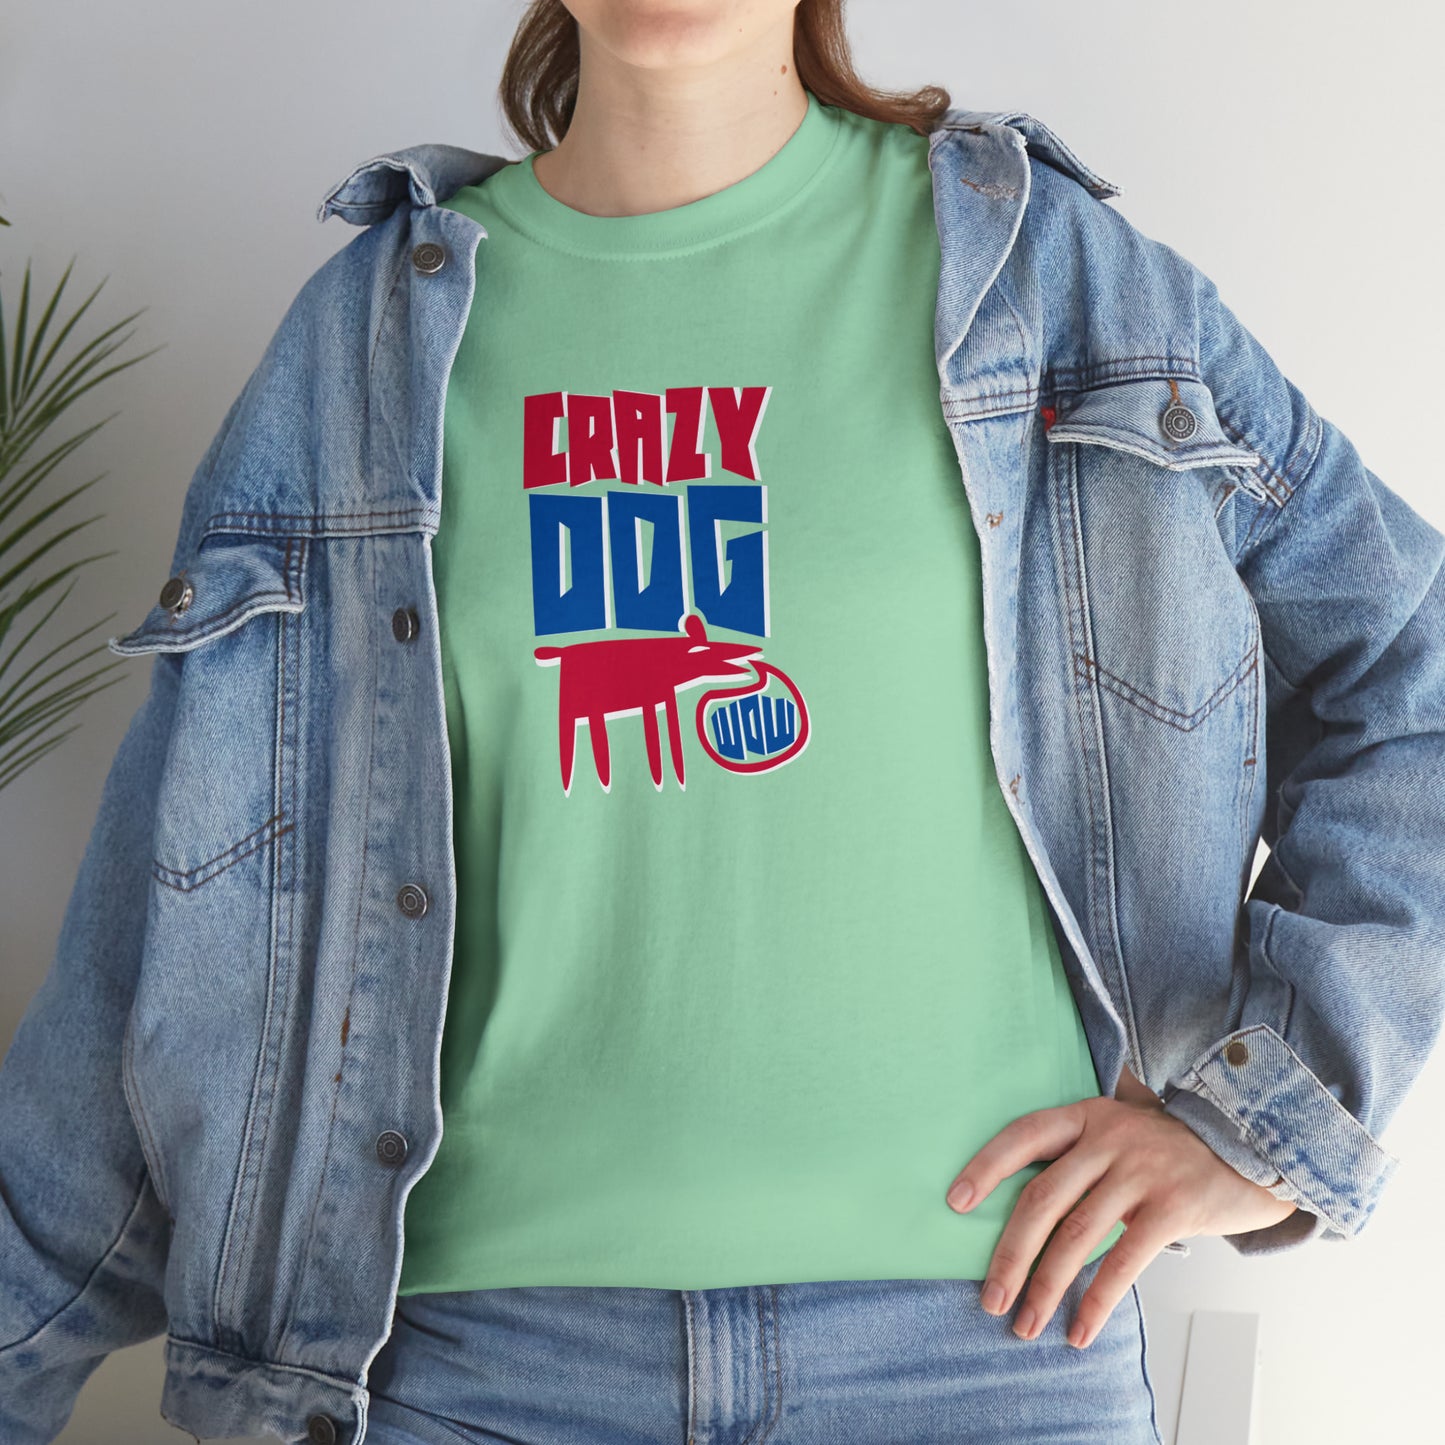 Wow! Crazy Dog T-Shirt